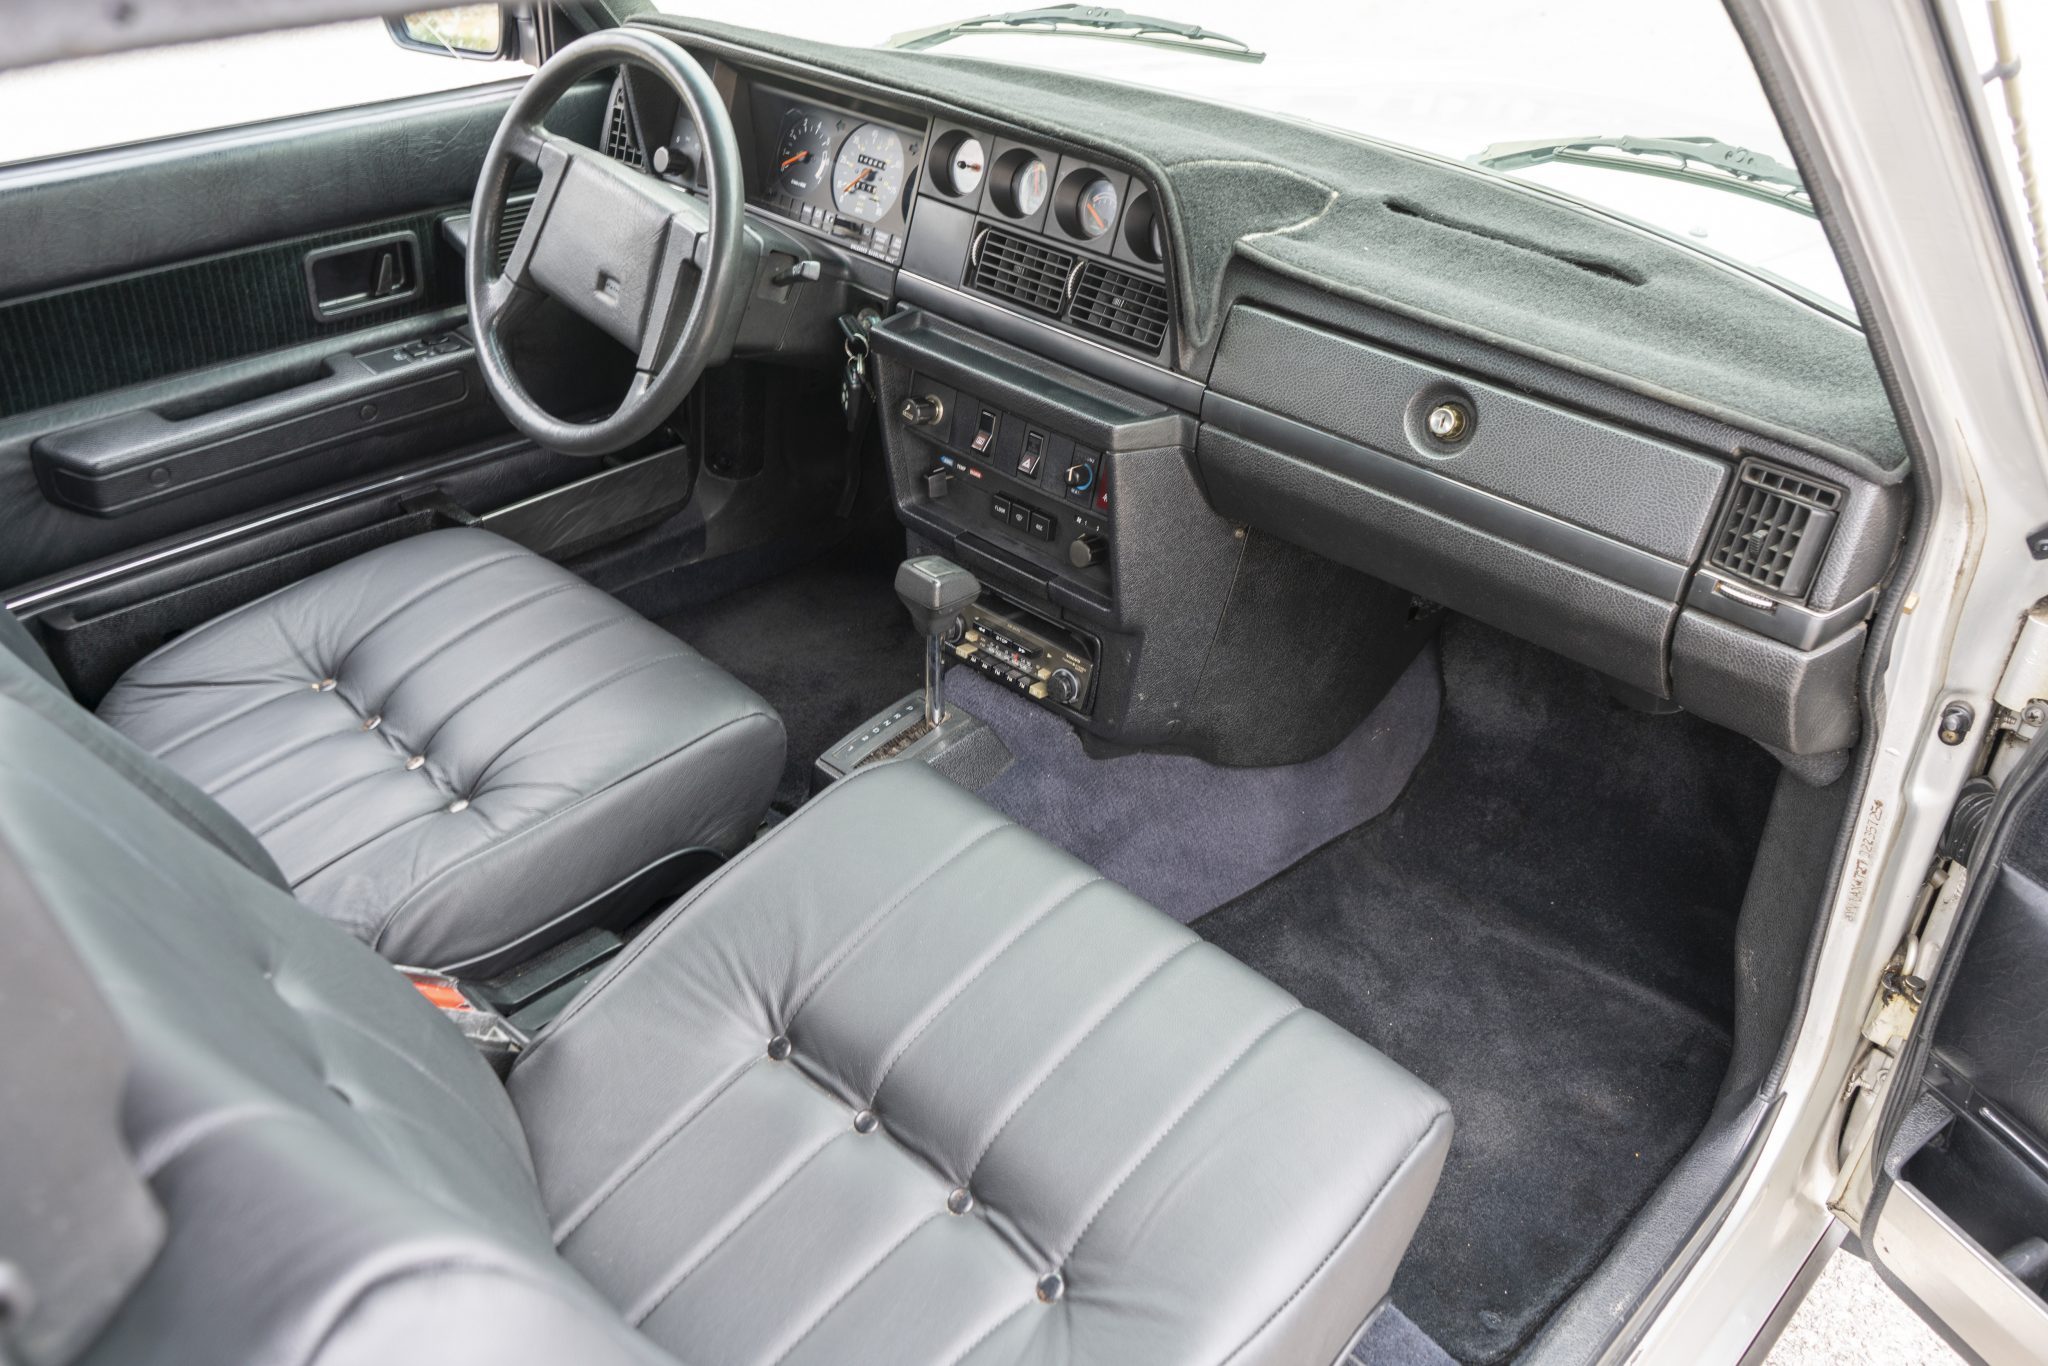 Volvo interior